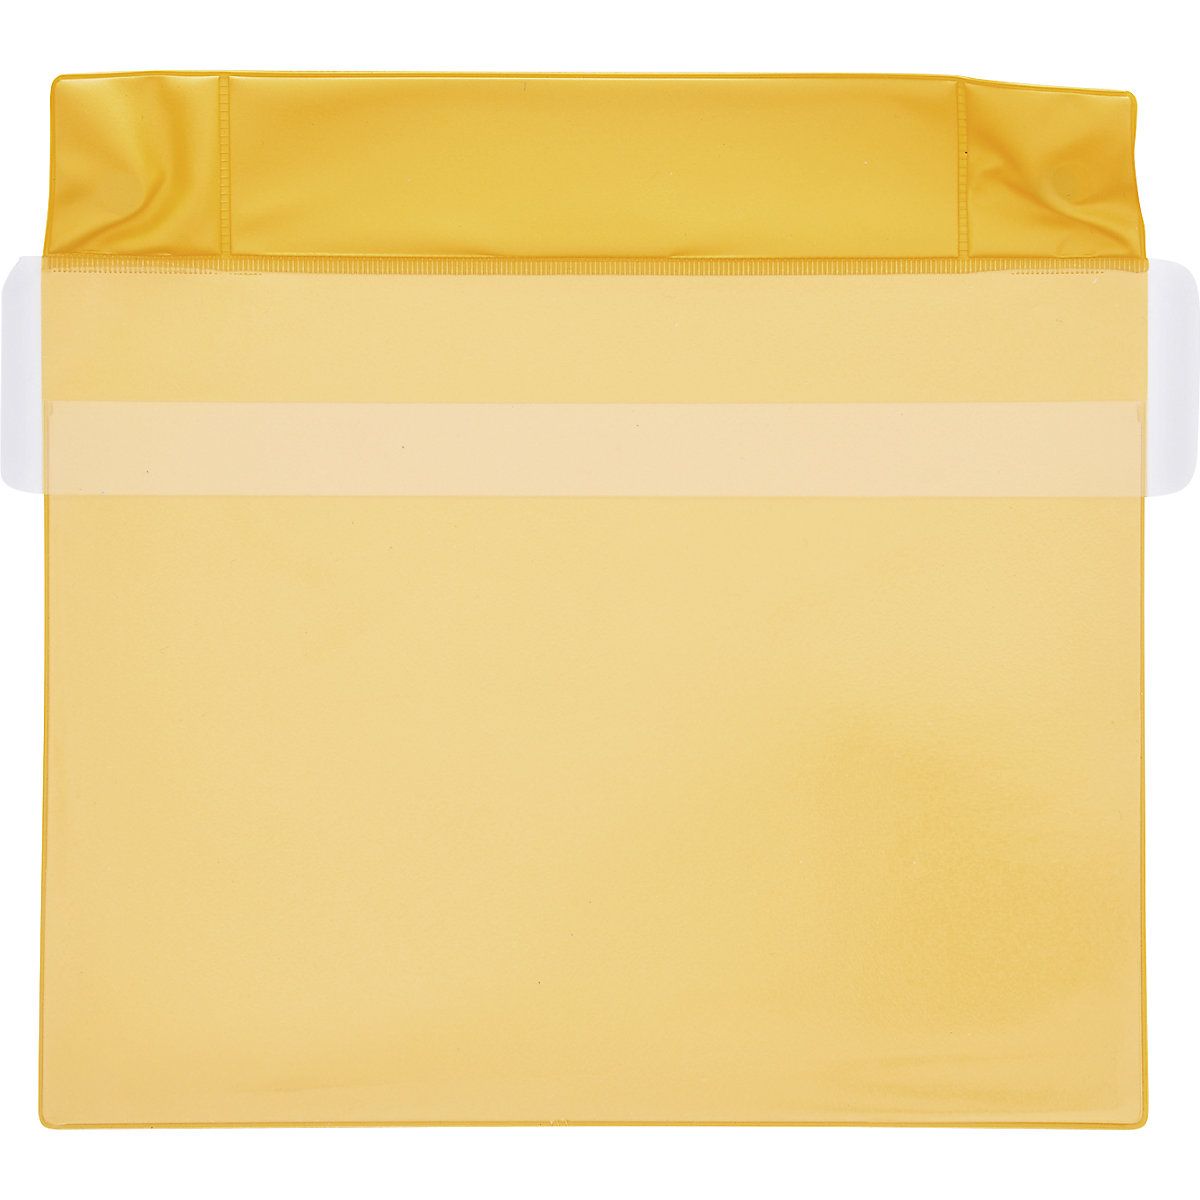 Pochettes magnétiques en néodyme, format horizontal, avec rabat de protection contre la pluie, lot de 25, jaune, format A5, à partir de 2 lots